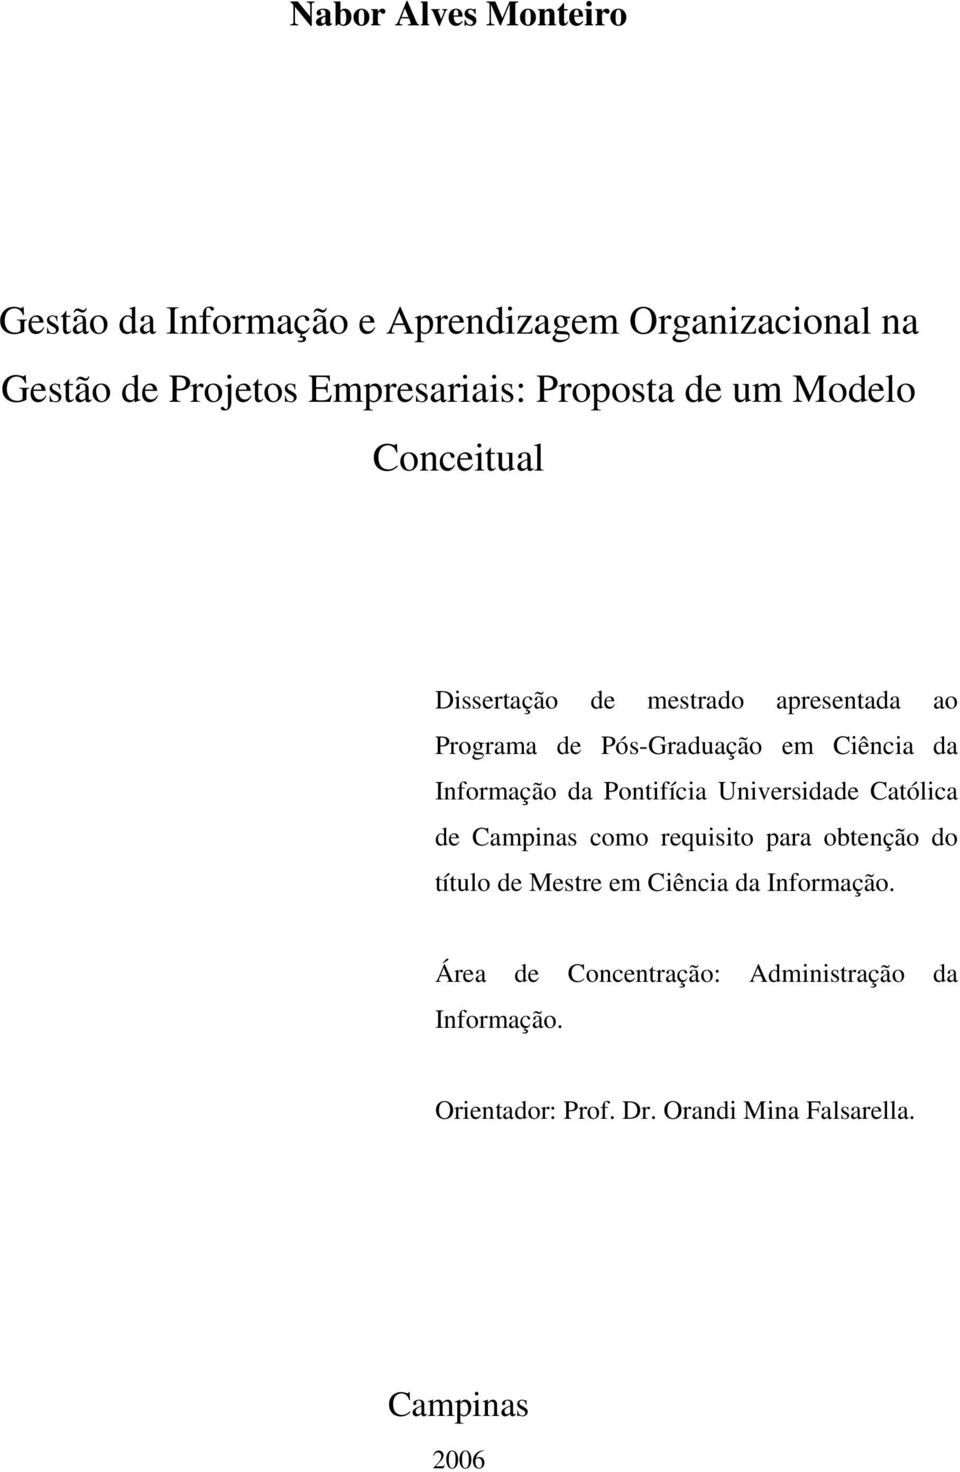 Informação da Pontifícia Universidade Católica de Campinas como requisito para obtenção do título de Mestre em